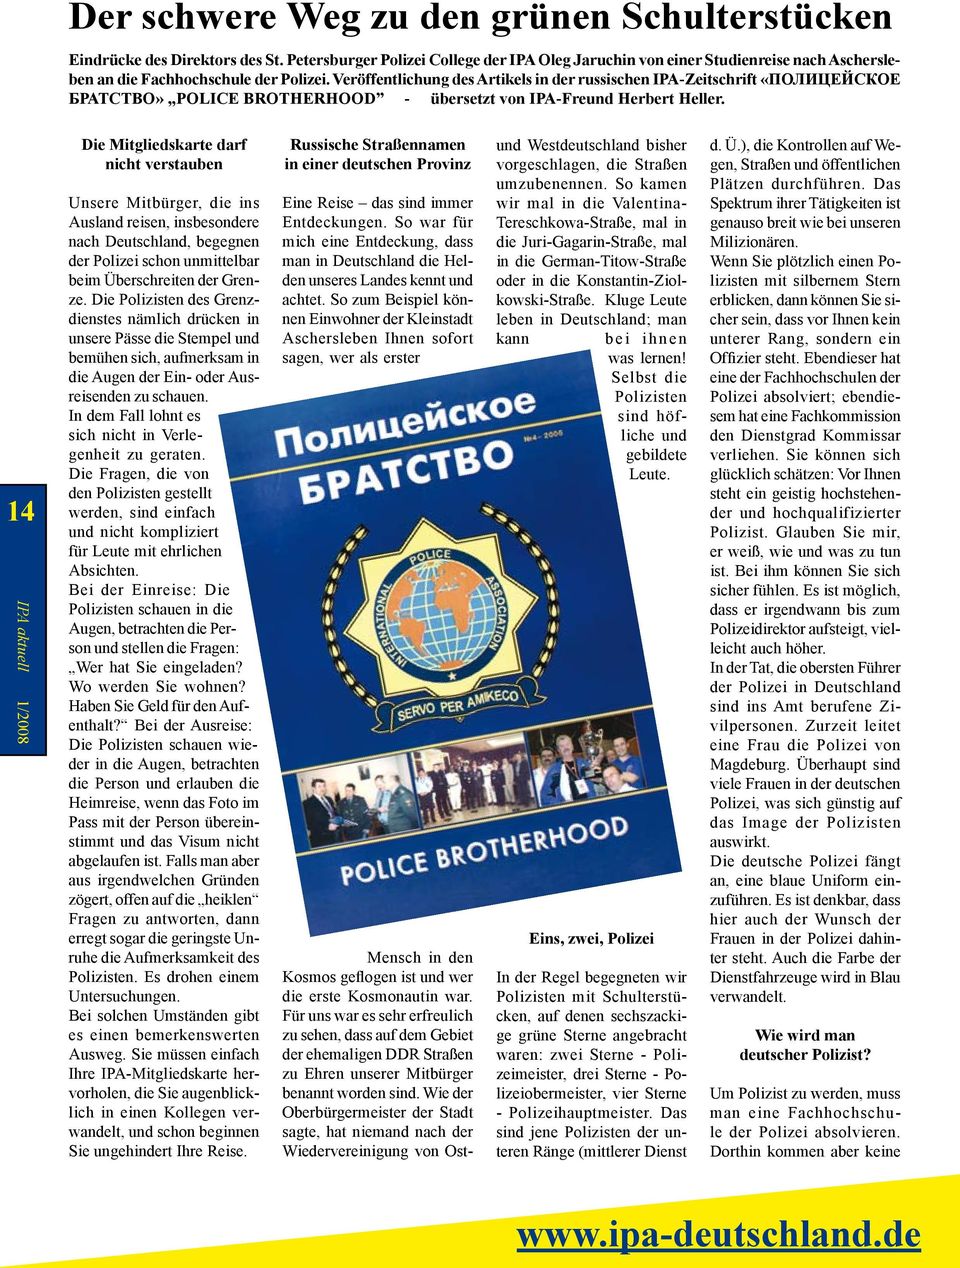 Veröffentlichung des Artikels in der russischen IPA-Zeitschrift «ПОЛИЦЕЙСКОЕ БРАТСТВО» POLICE BROTHERHOOD - übersetzt von IPA-Freund Herbert Heller.